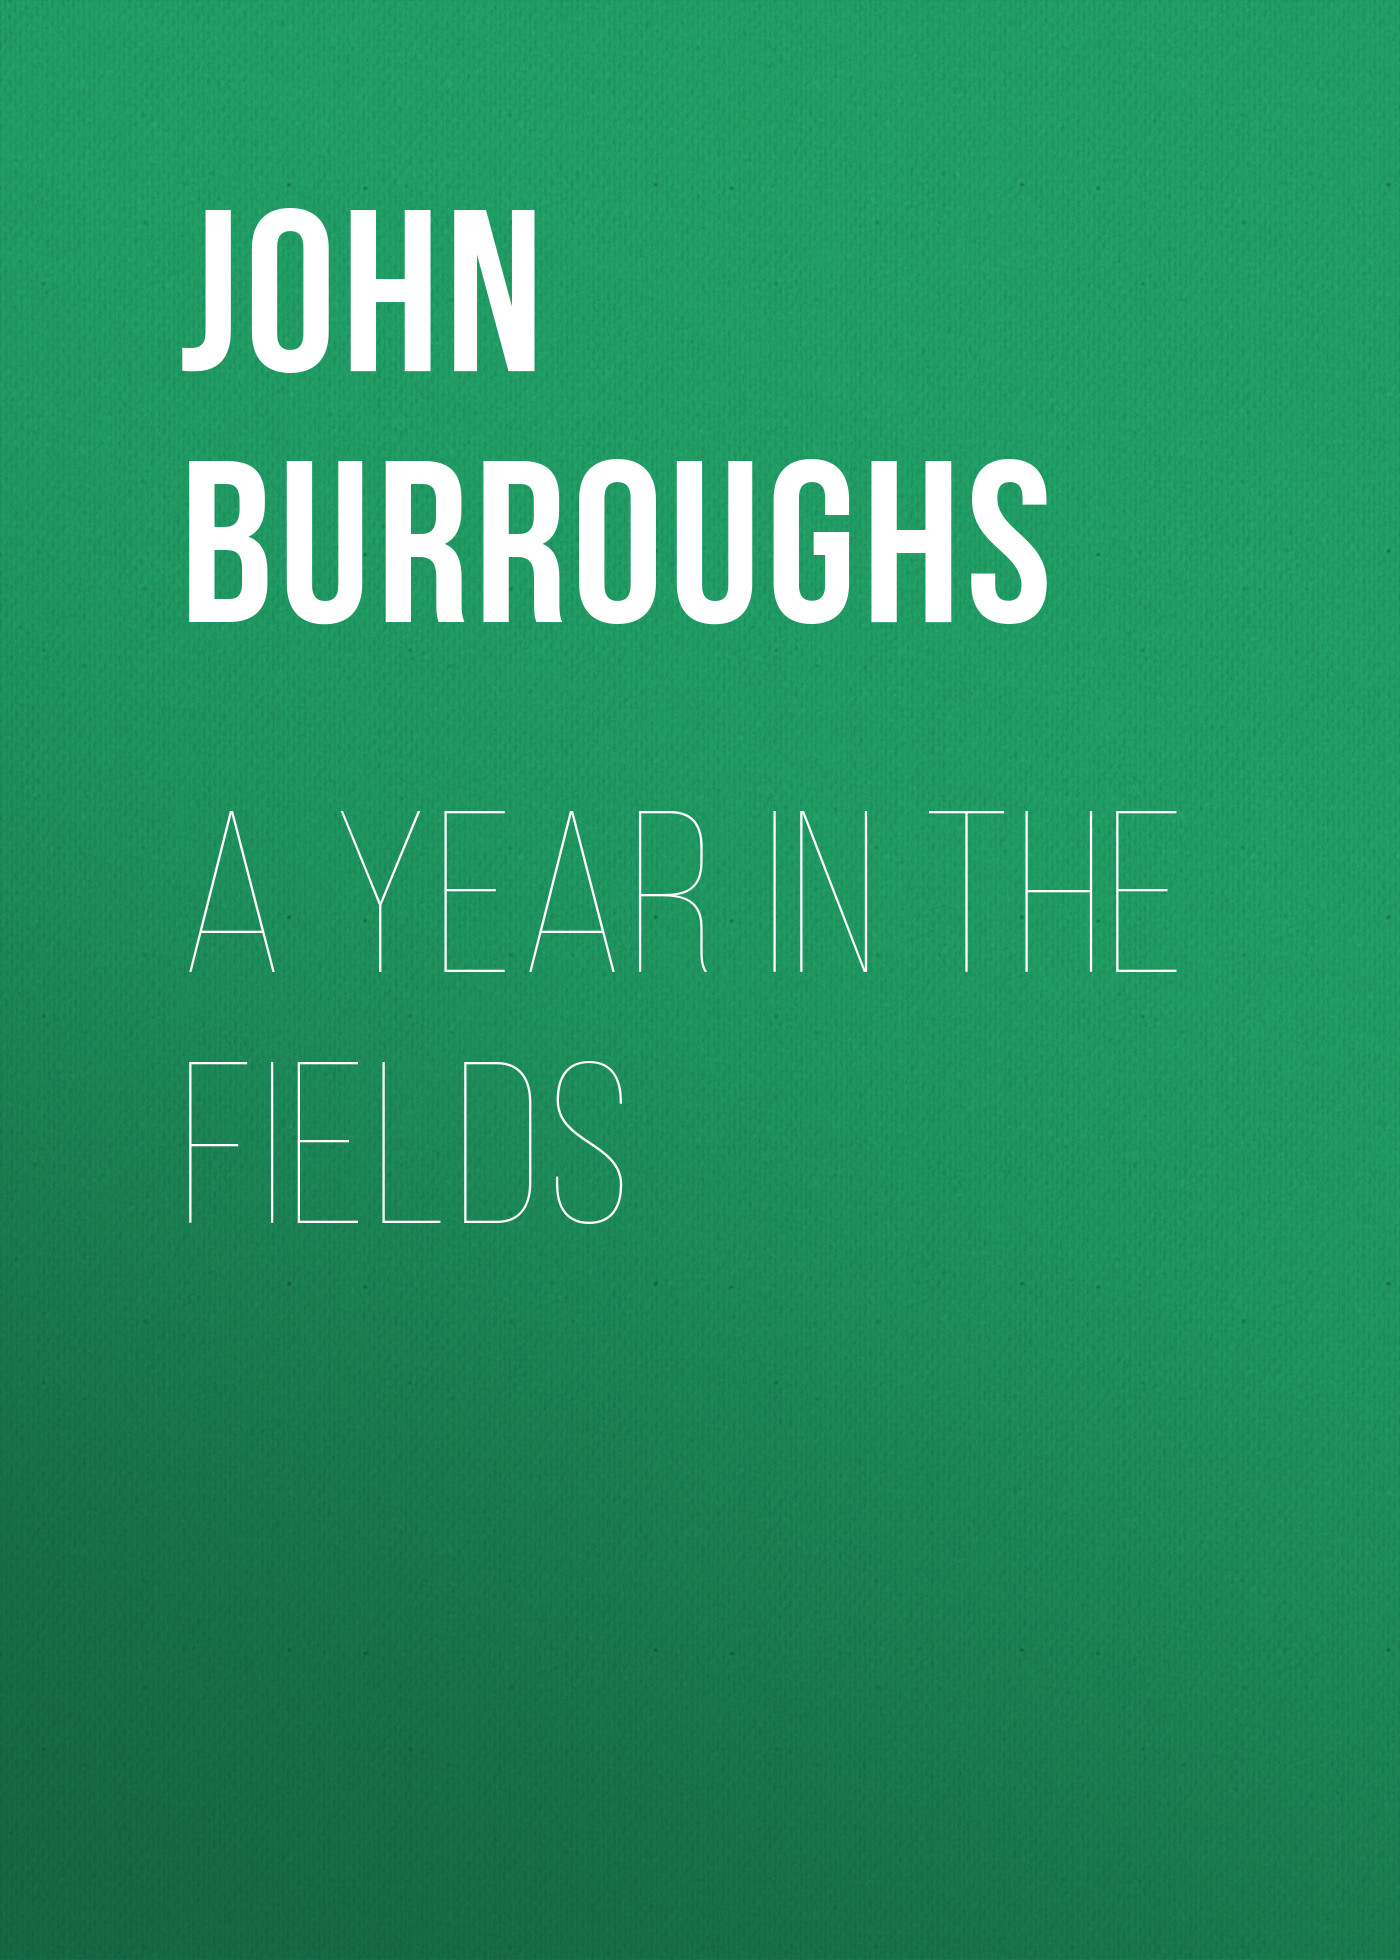 Книга A Year in the Fields из серии , созданная John Burroughs, может относится к жанру Зарубежная старинная литература, Зарубежная классика, Историческая литература. Стоимость электронной книги A Year in the Fields с идентификатором 24180644 составляет 0.90 руб.